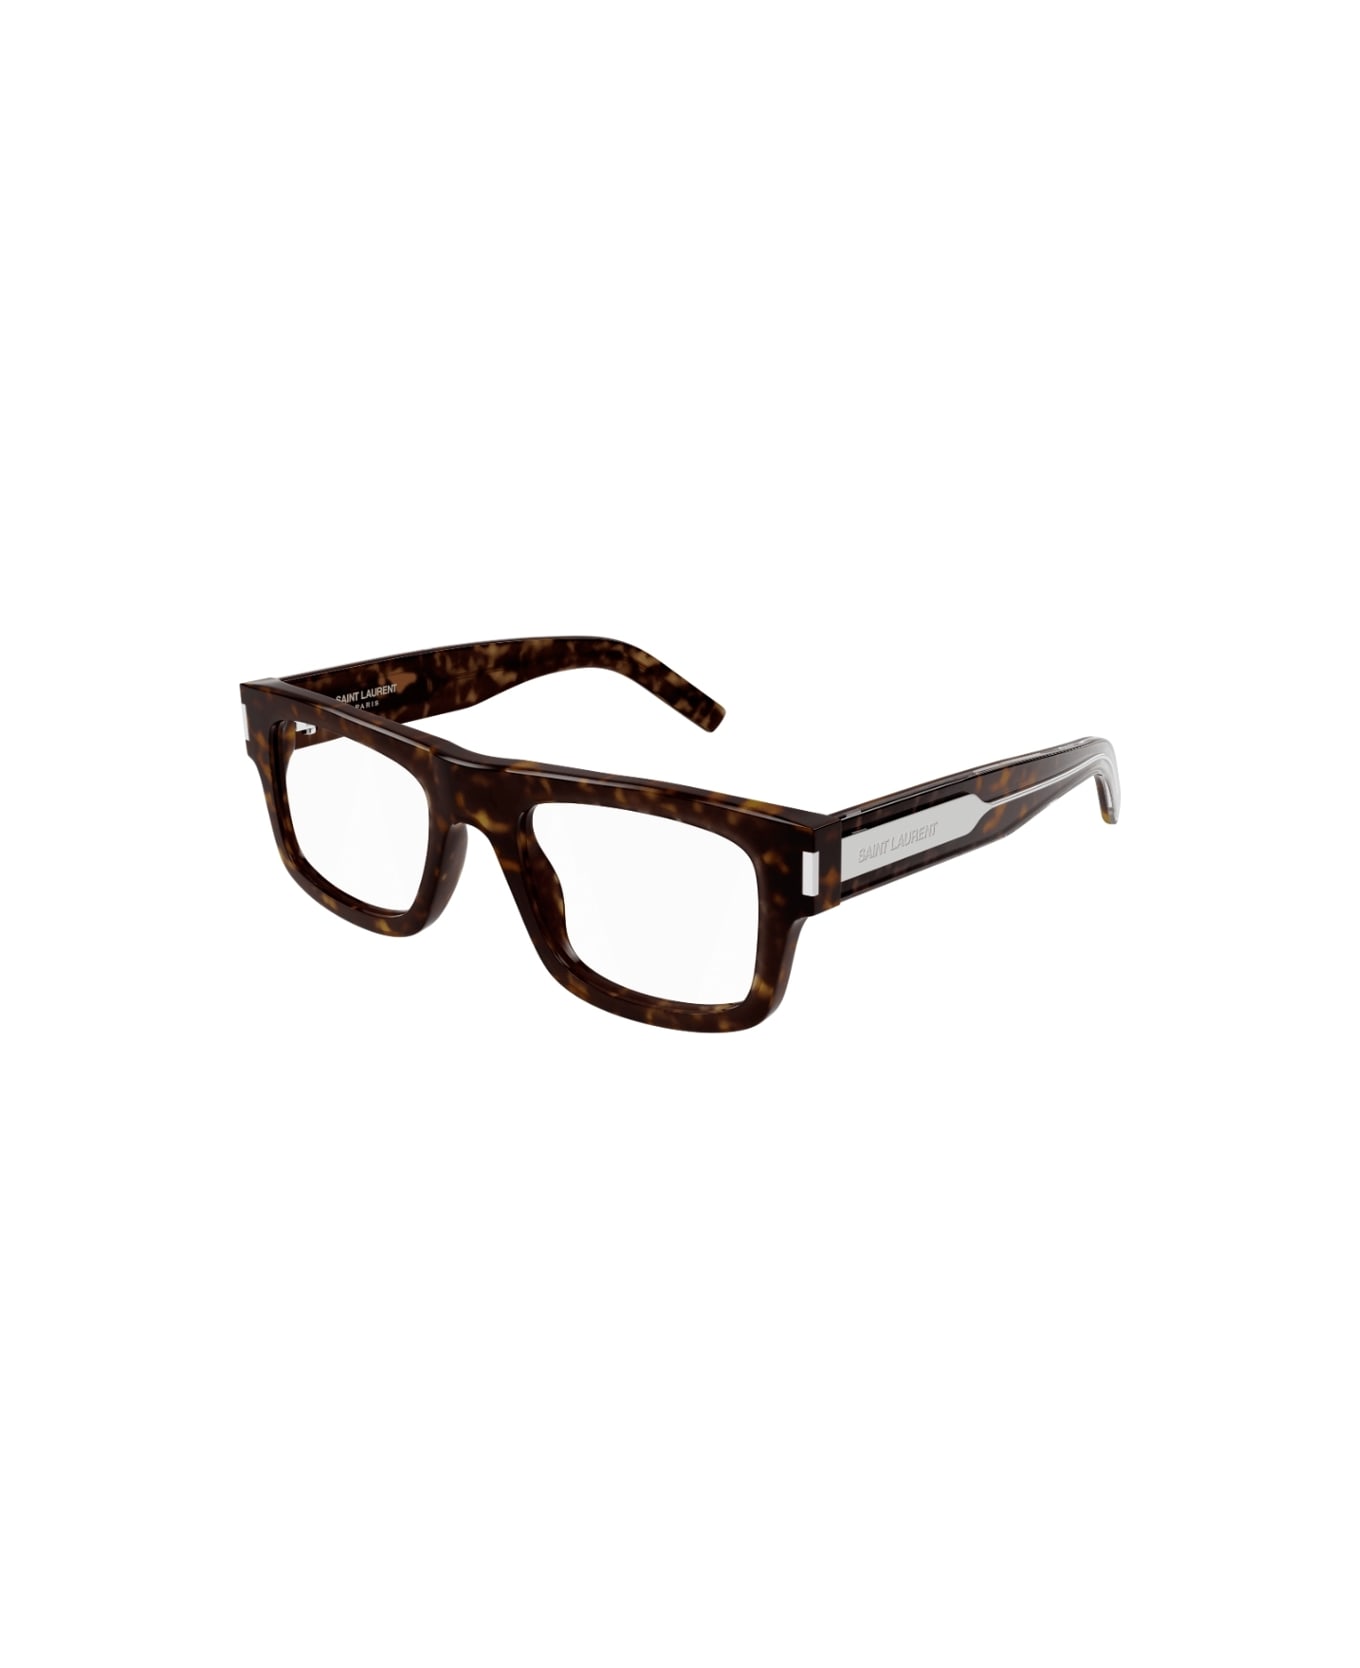 Saint Laurent Eyewear sl 574 002 Glasses アイウェア